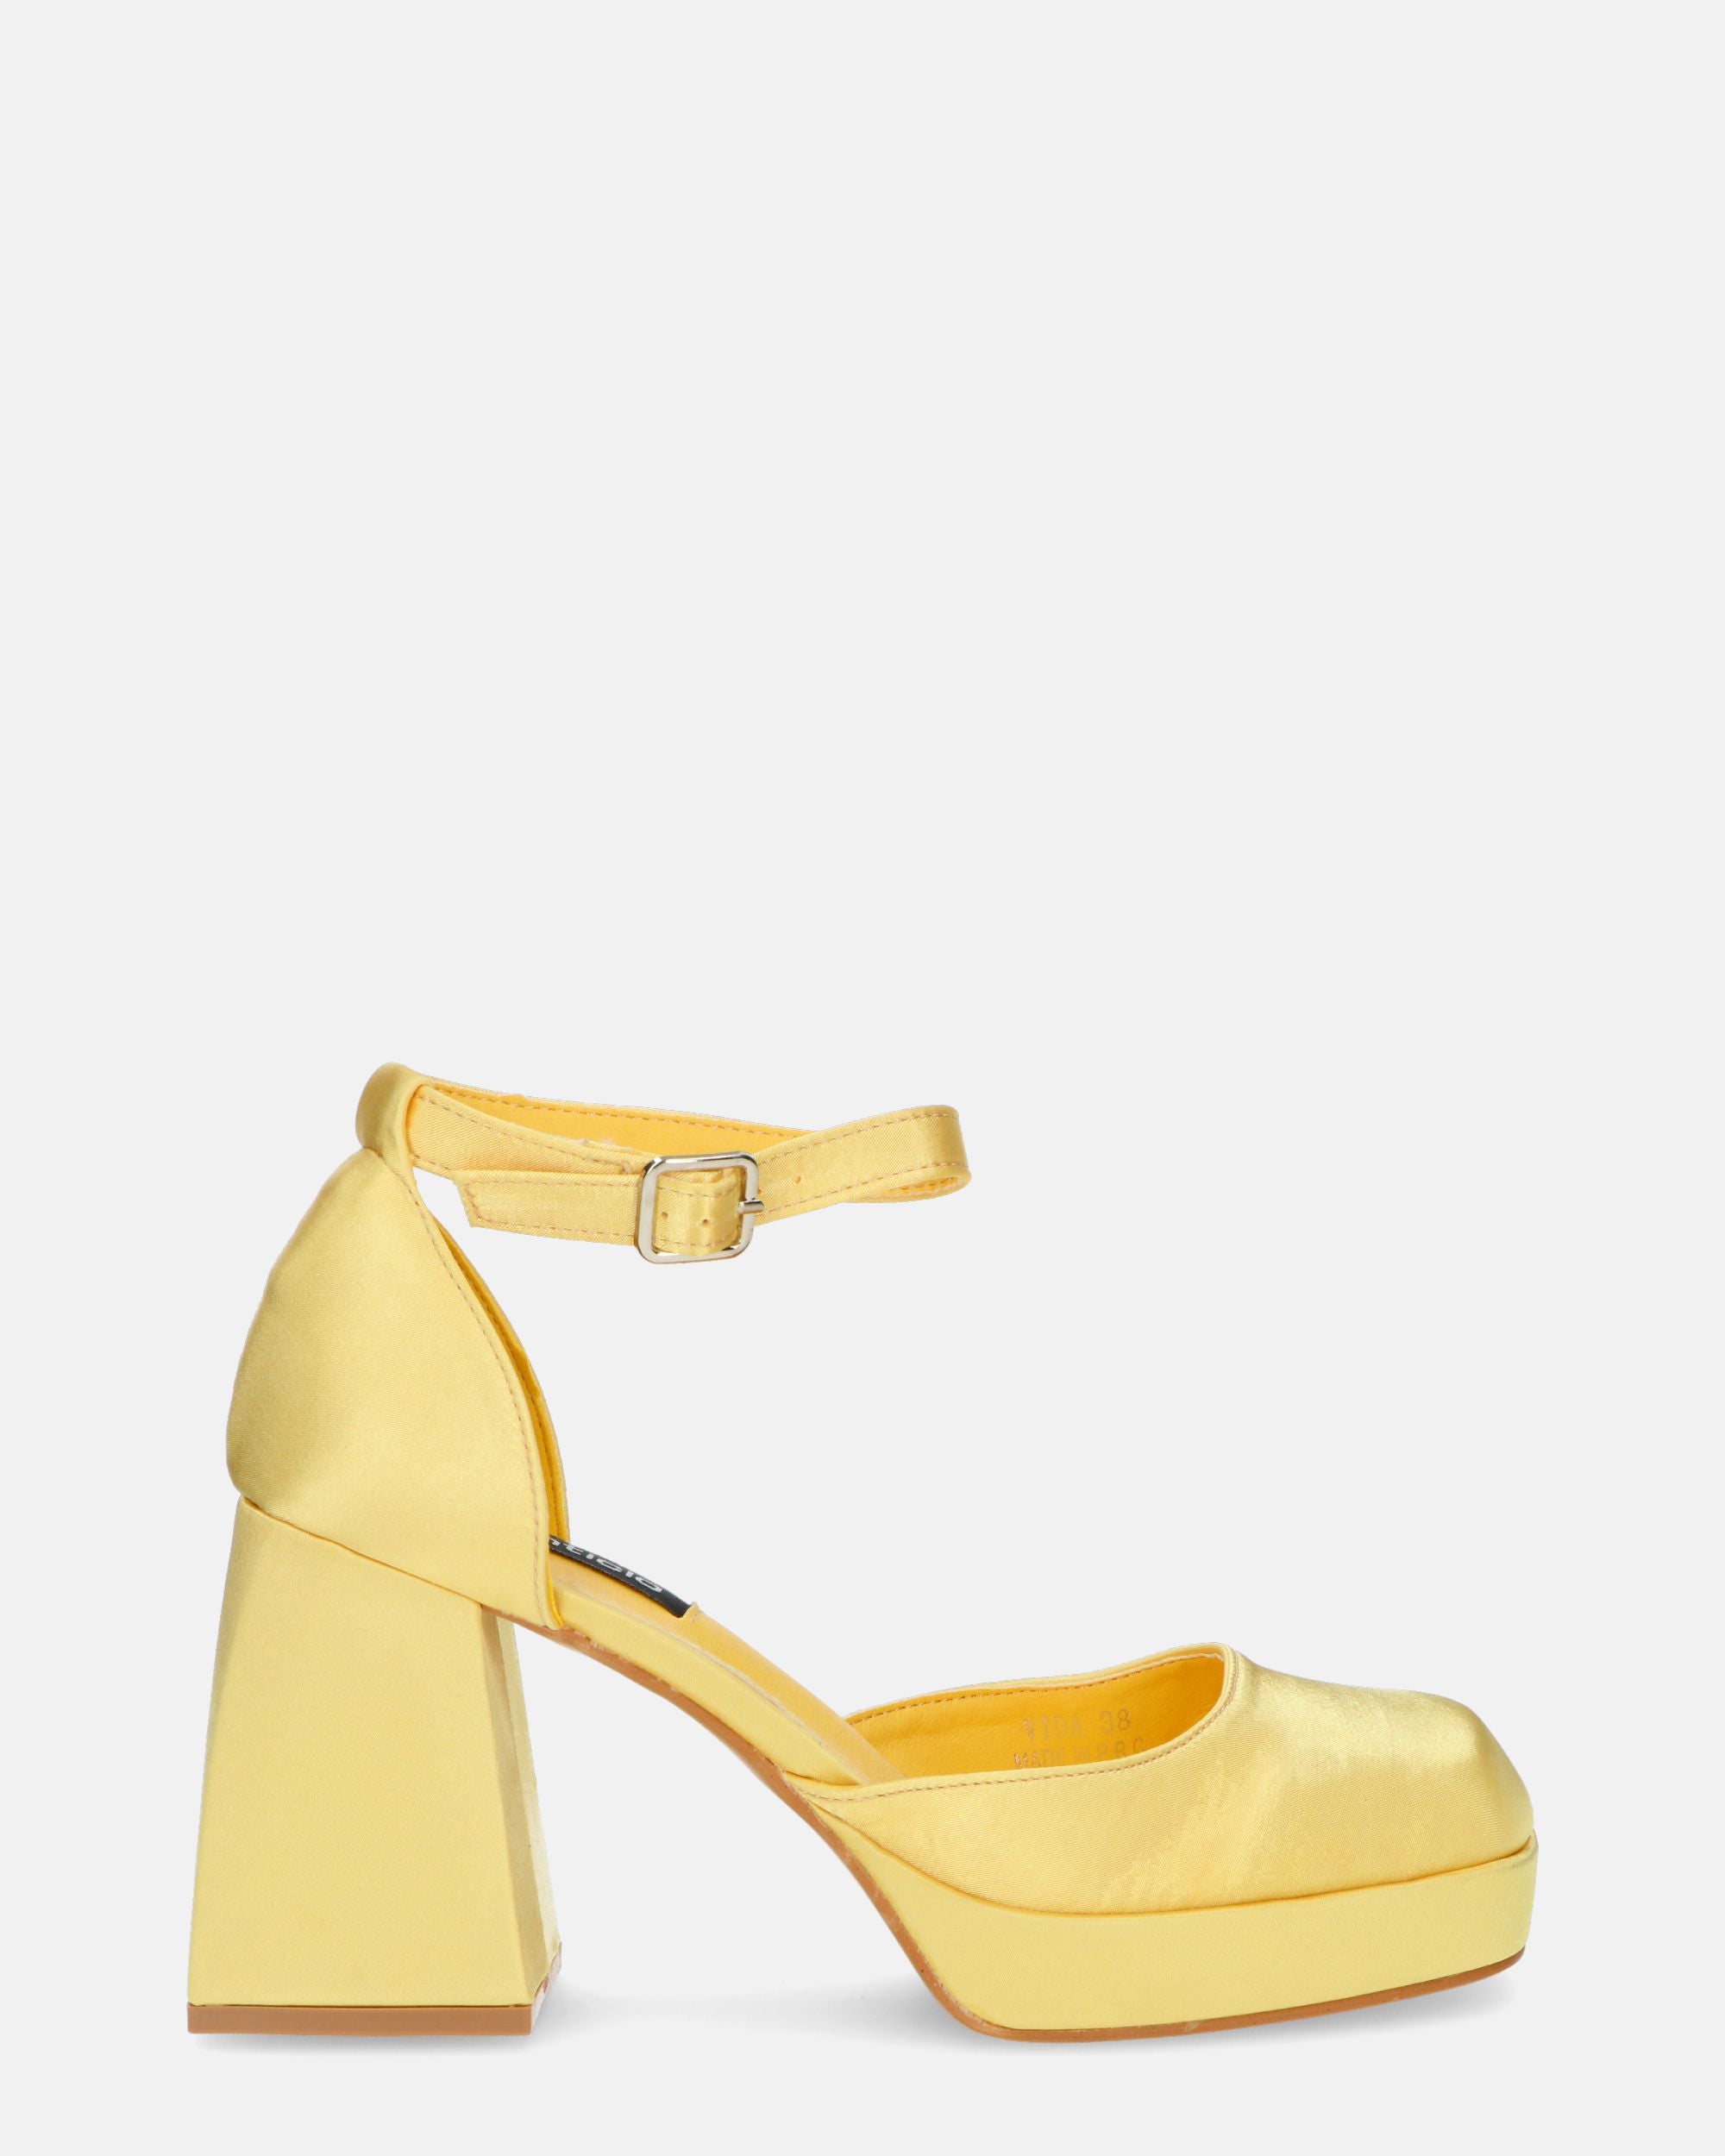 VIDA - scarpe con tacco squadrato in satin giallo